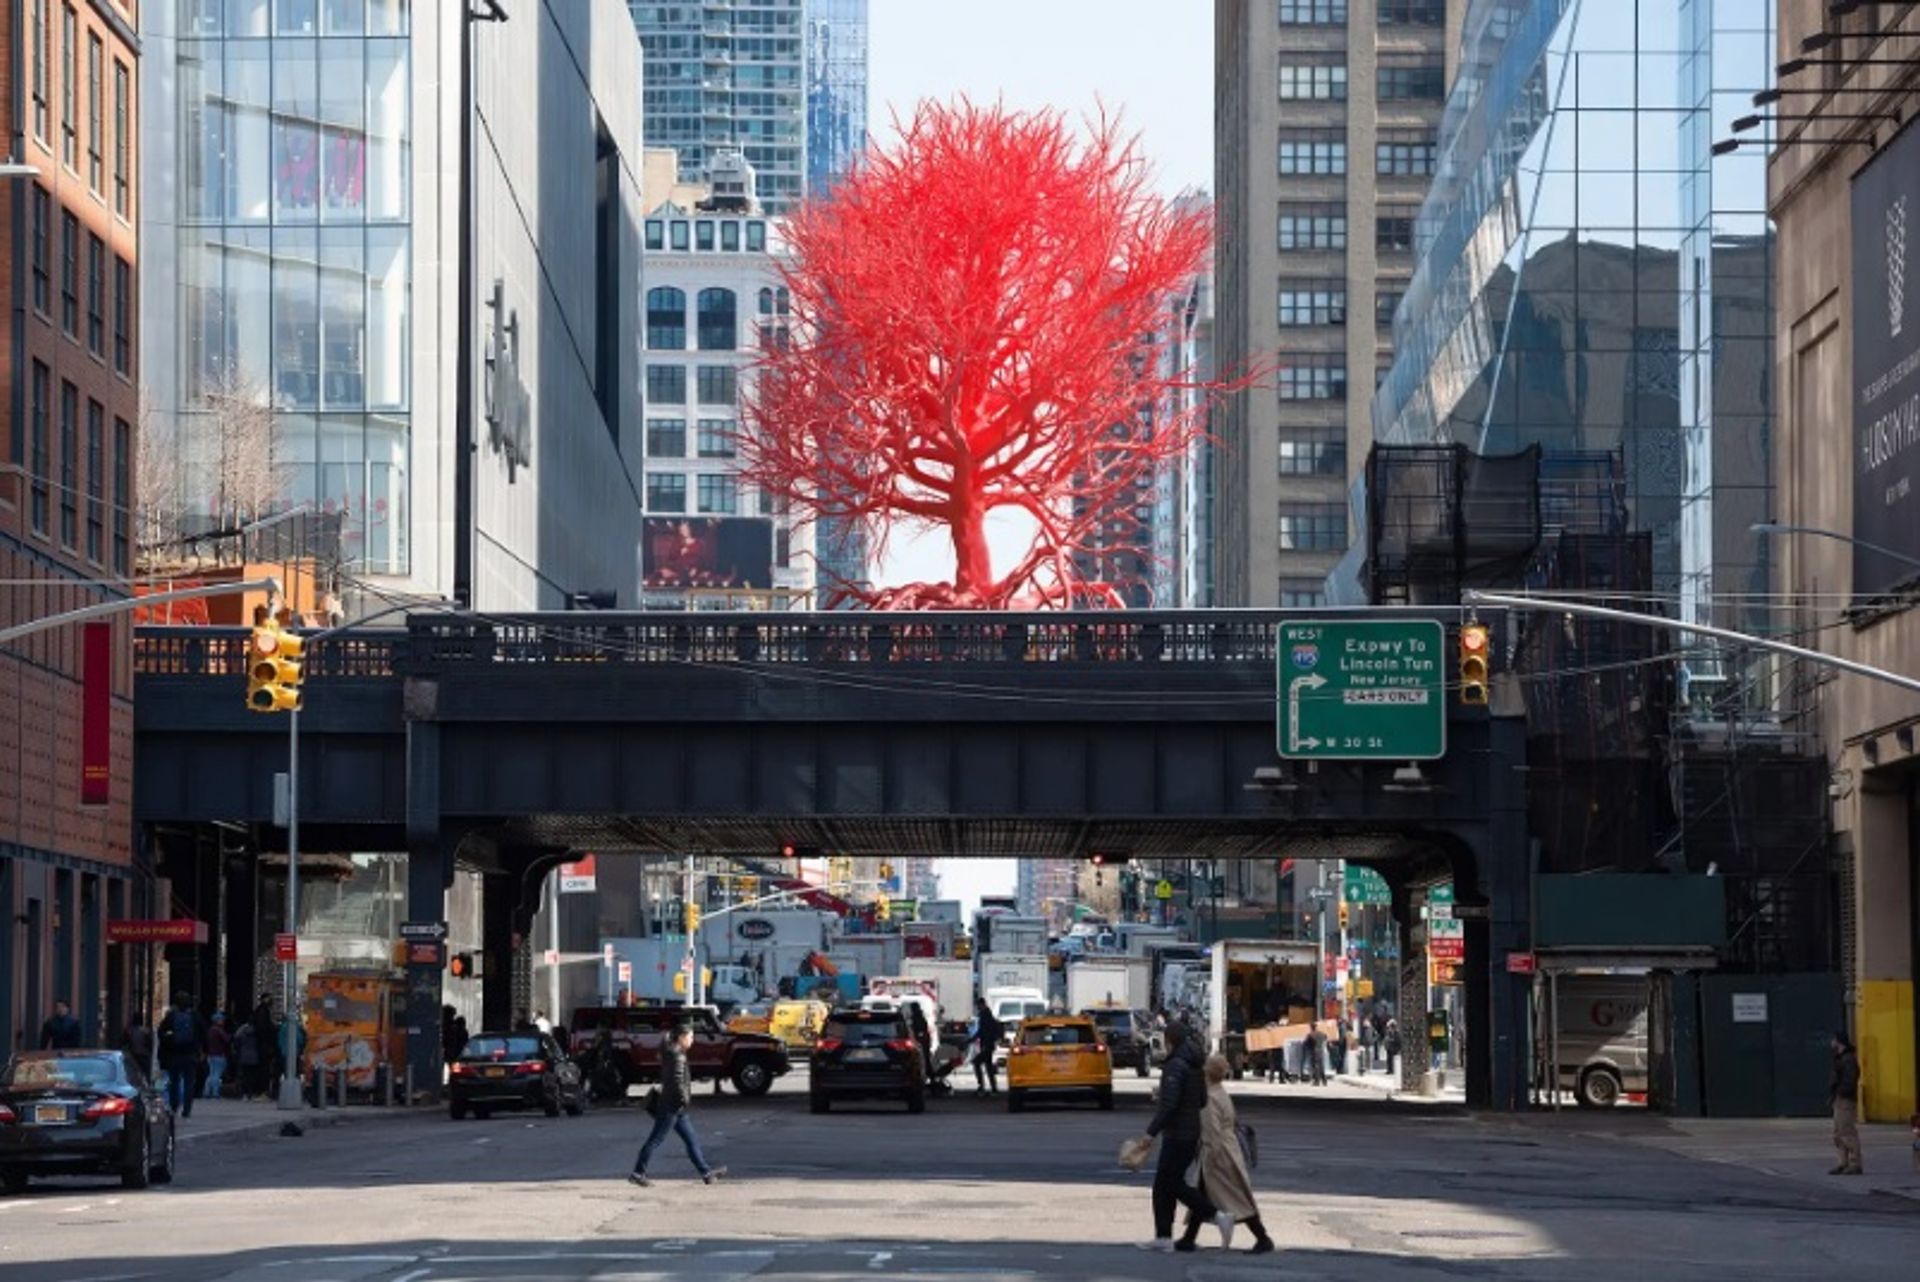 עץ ישן (עיבוד) של פמלה רוזנקרנץ, הזמנה של High Line Plinth

פמלה רוזנקרנץ וההיי ליין